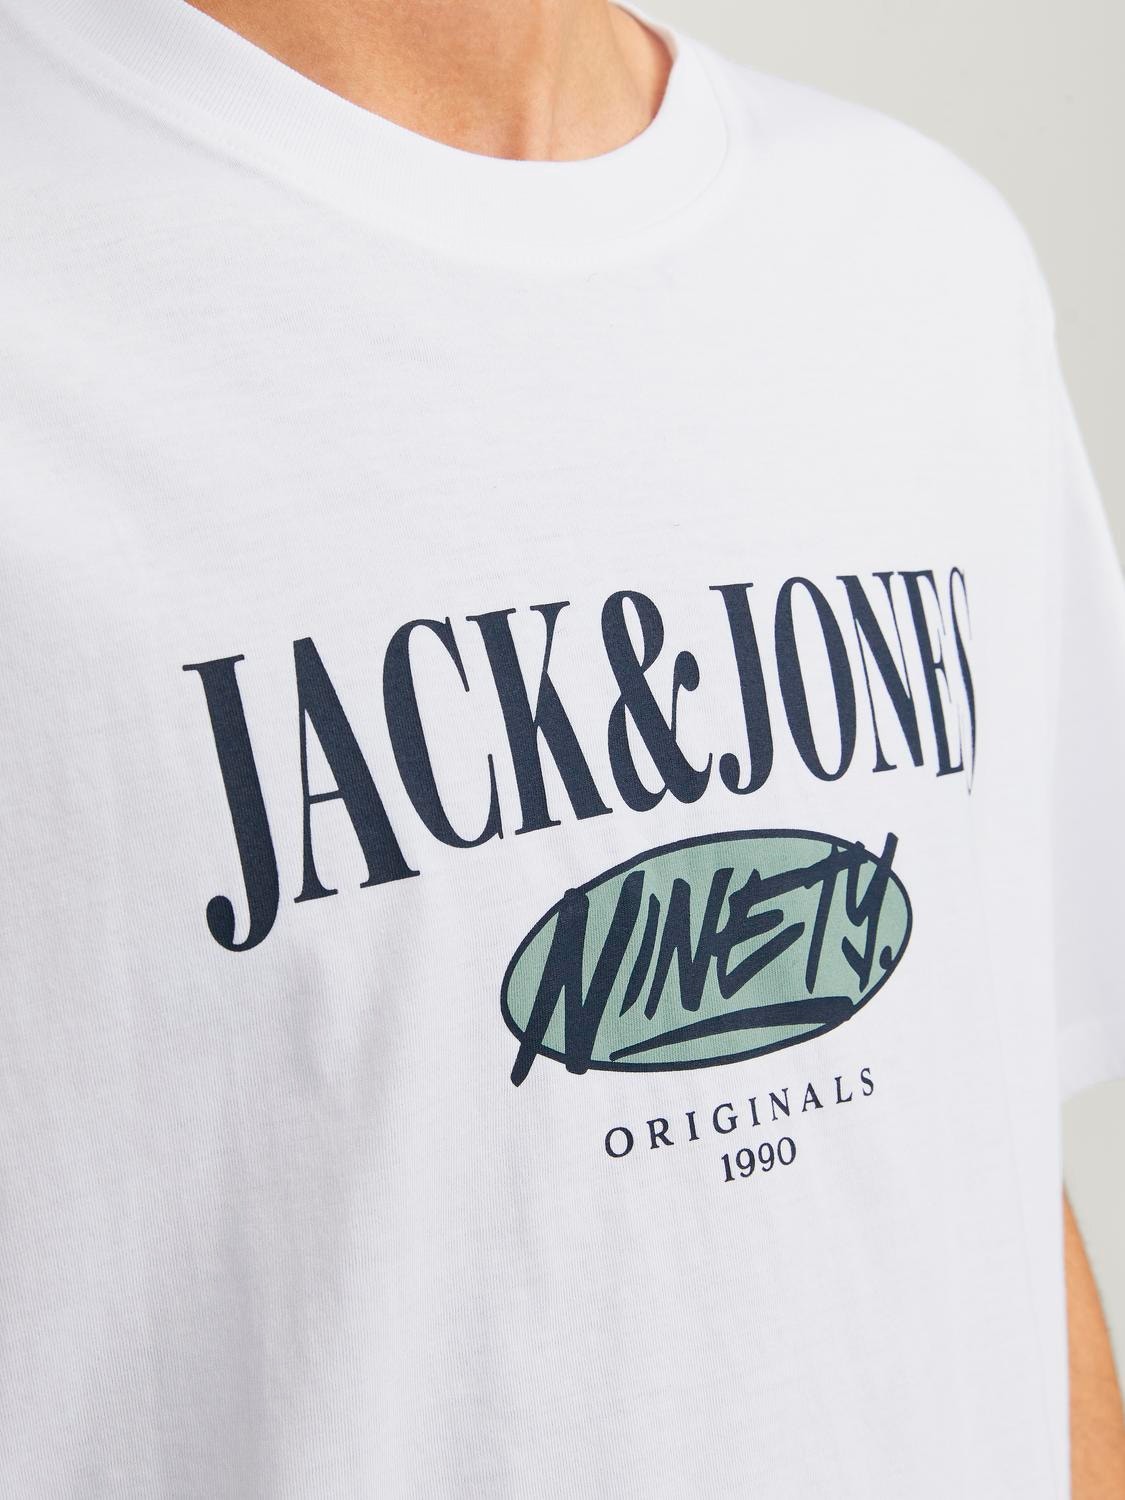 Jack & Jones Pack de 2 T-shirt Imprimé Col rond -Bright White - 12260795